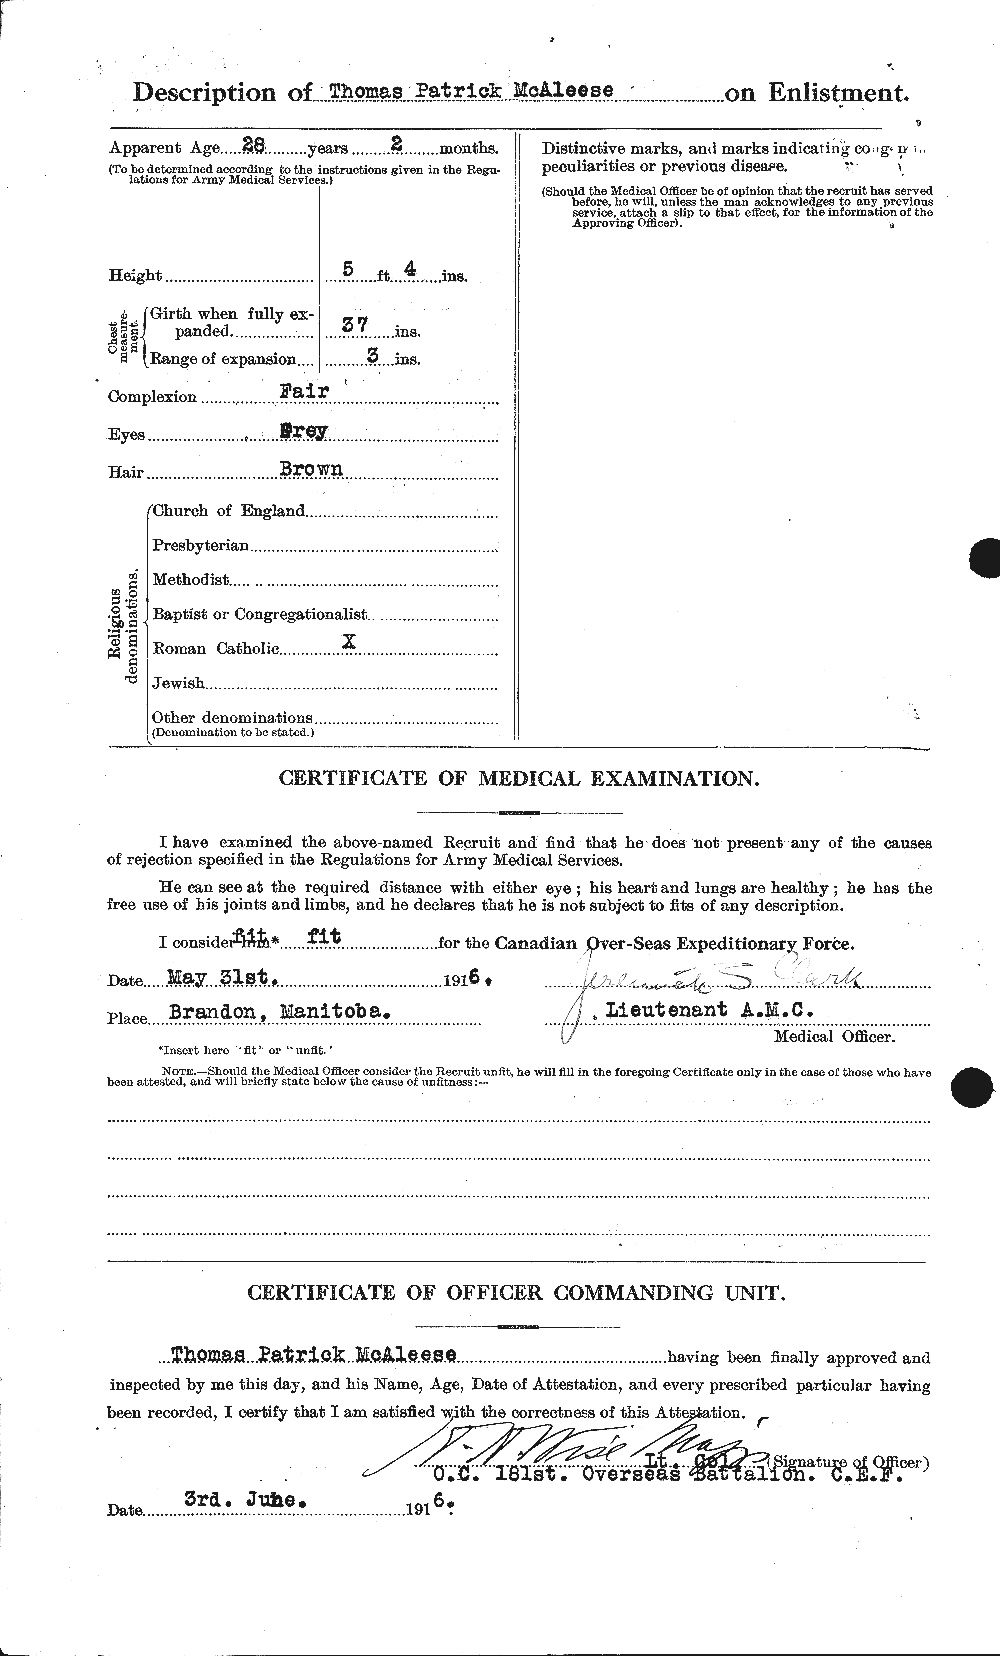 Dossiers du Personnel de la Première Guerre mondiale - CEC 513096b